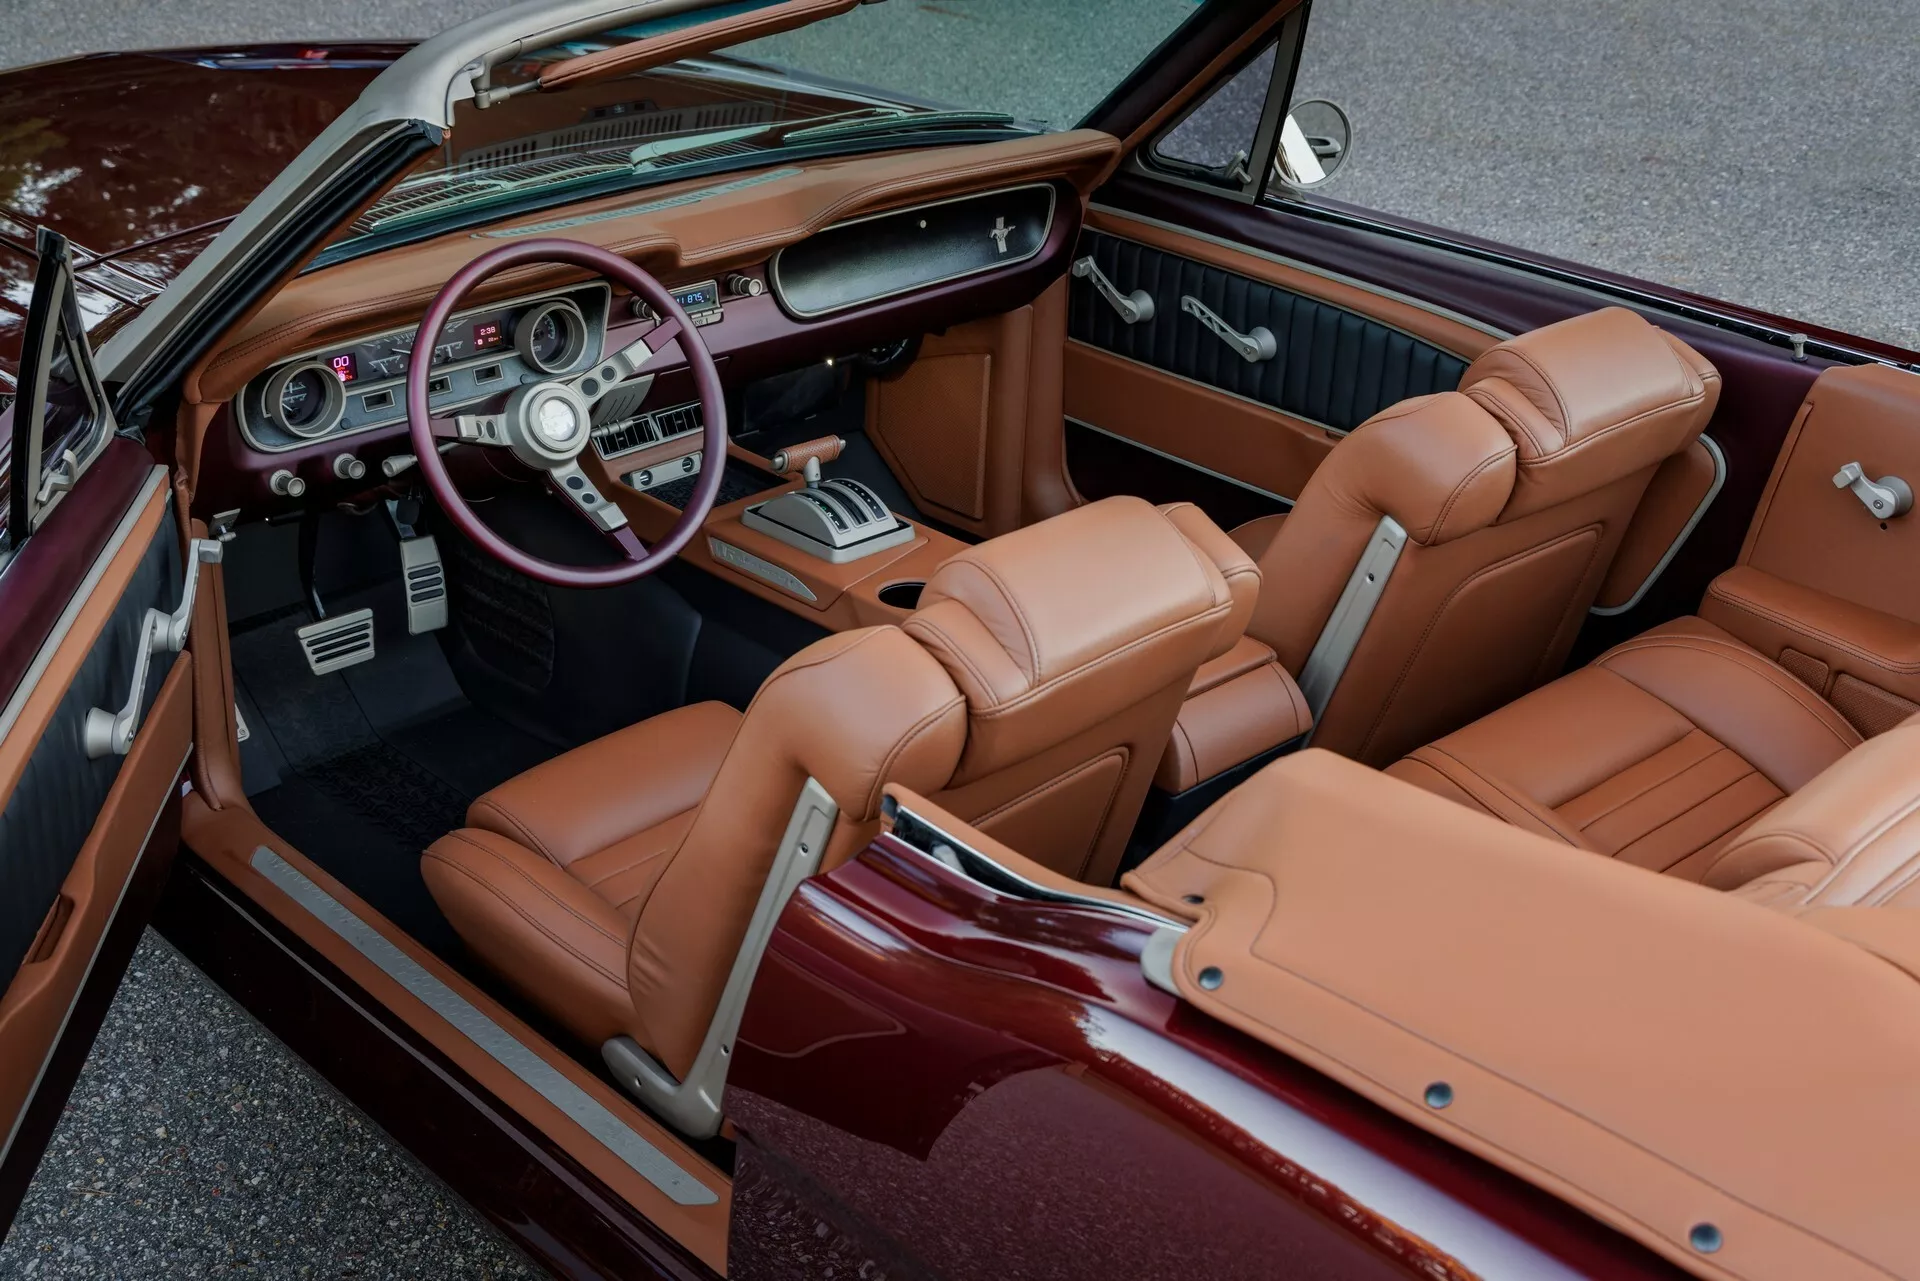 تدشين واحدة من أجمل سيارات فورد موستنج الكلاسيكية في معرض سيما الأمريكي بمحرك 8 سلندر عصري 5